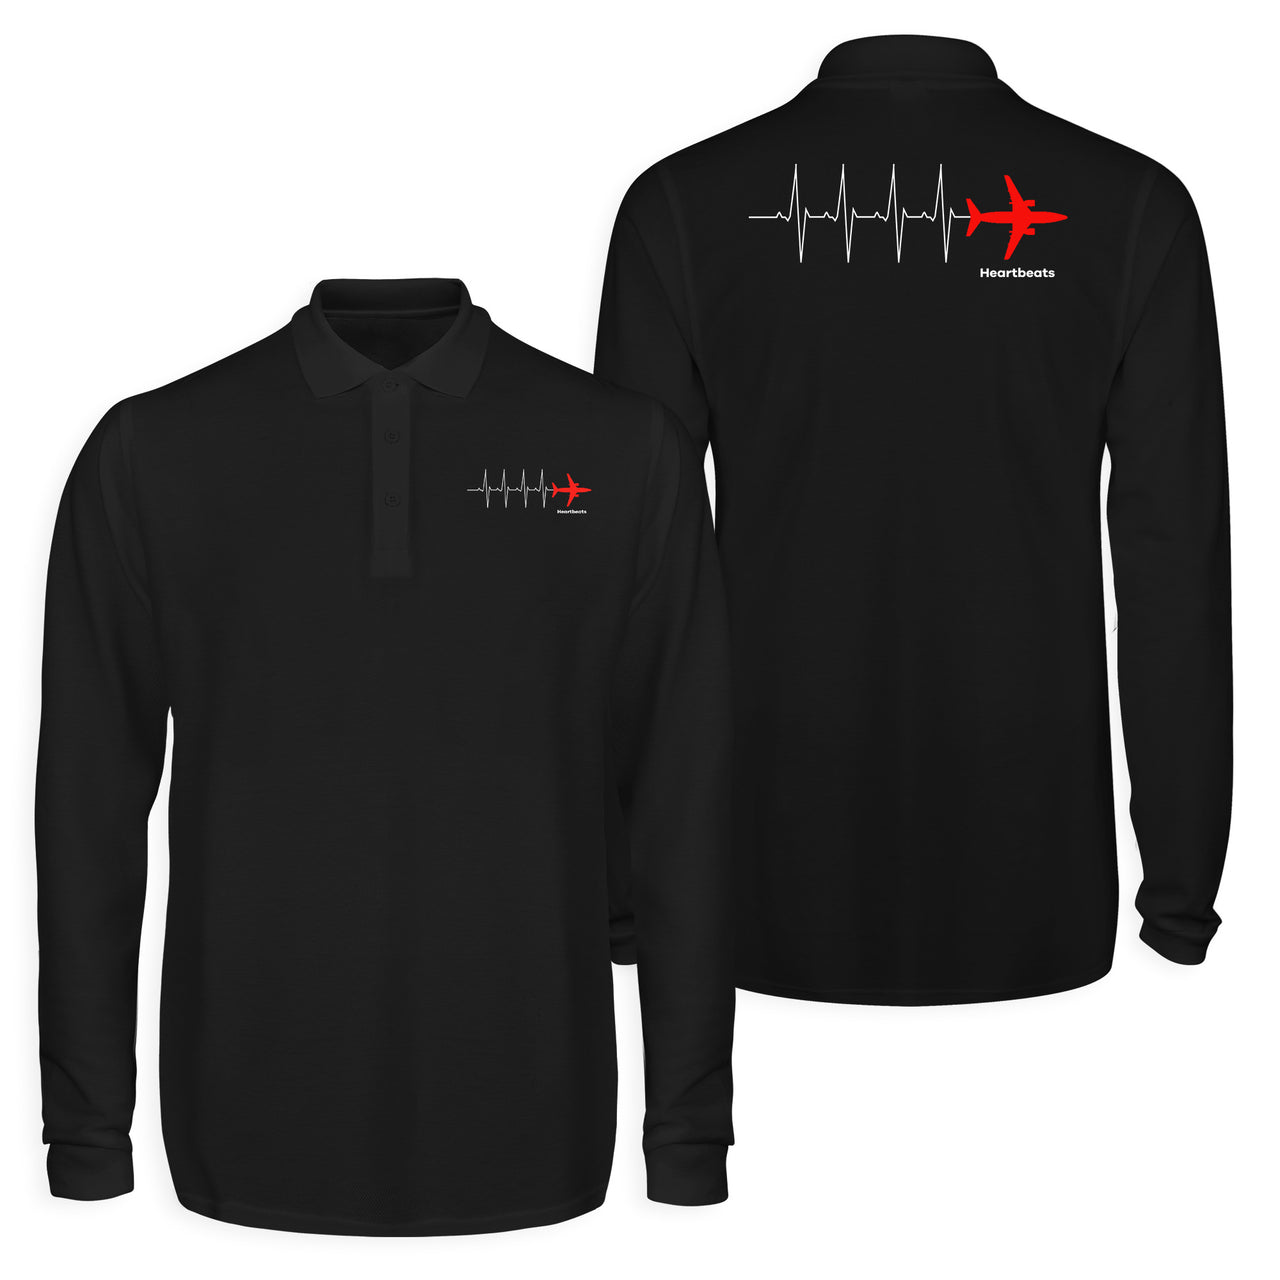 Aviation Heartbeats Designed Long Sleeve Polo T-Shirts (Double-Side)